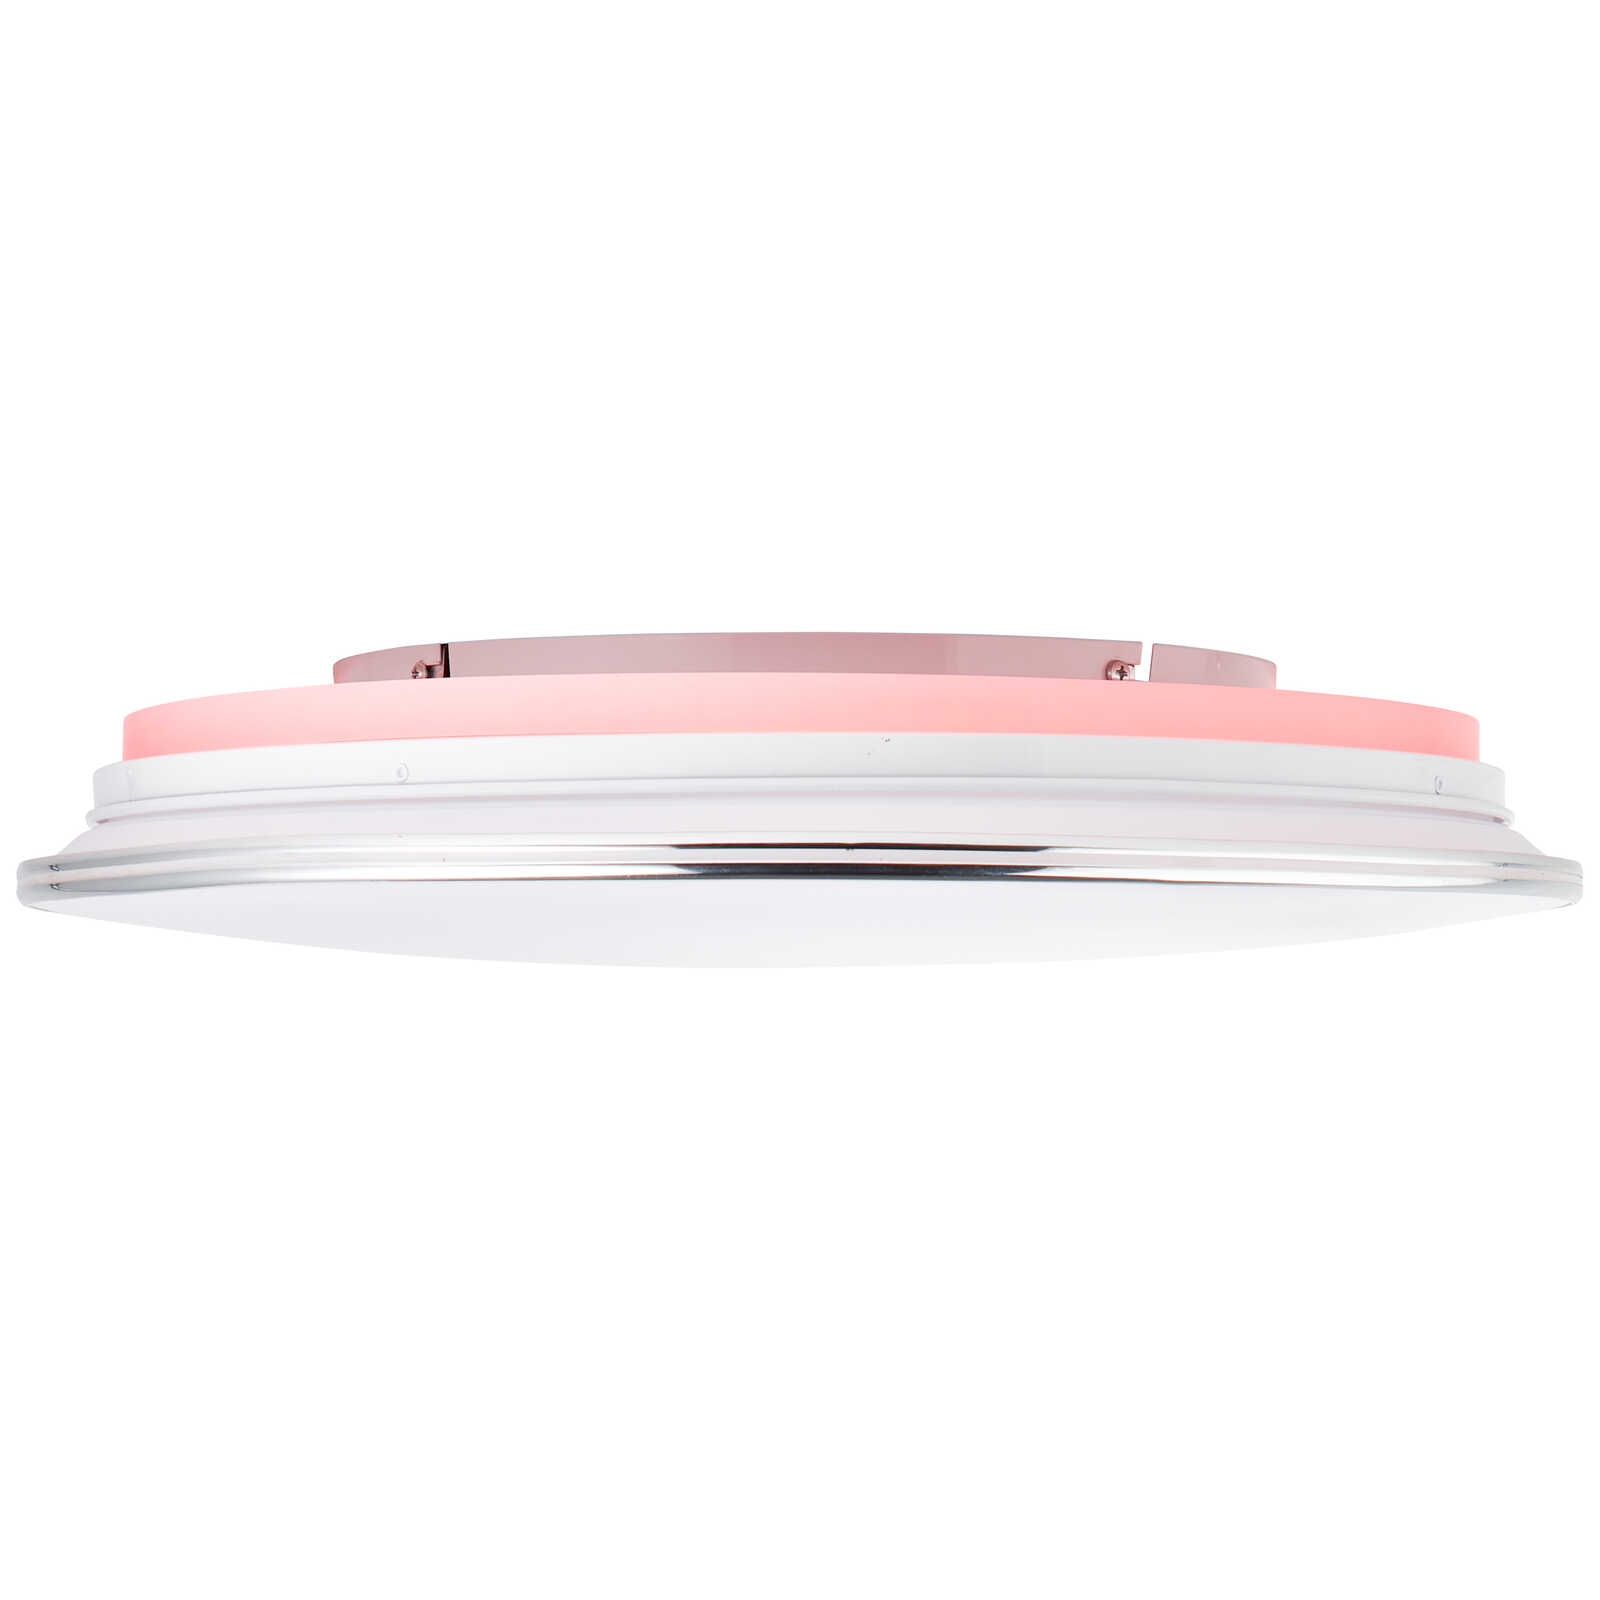             Plastic ceiling light - Fiona 2 - Metallic
        